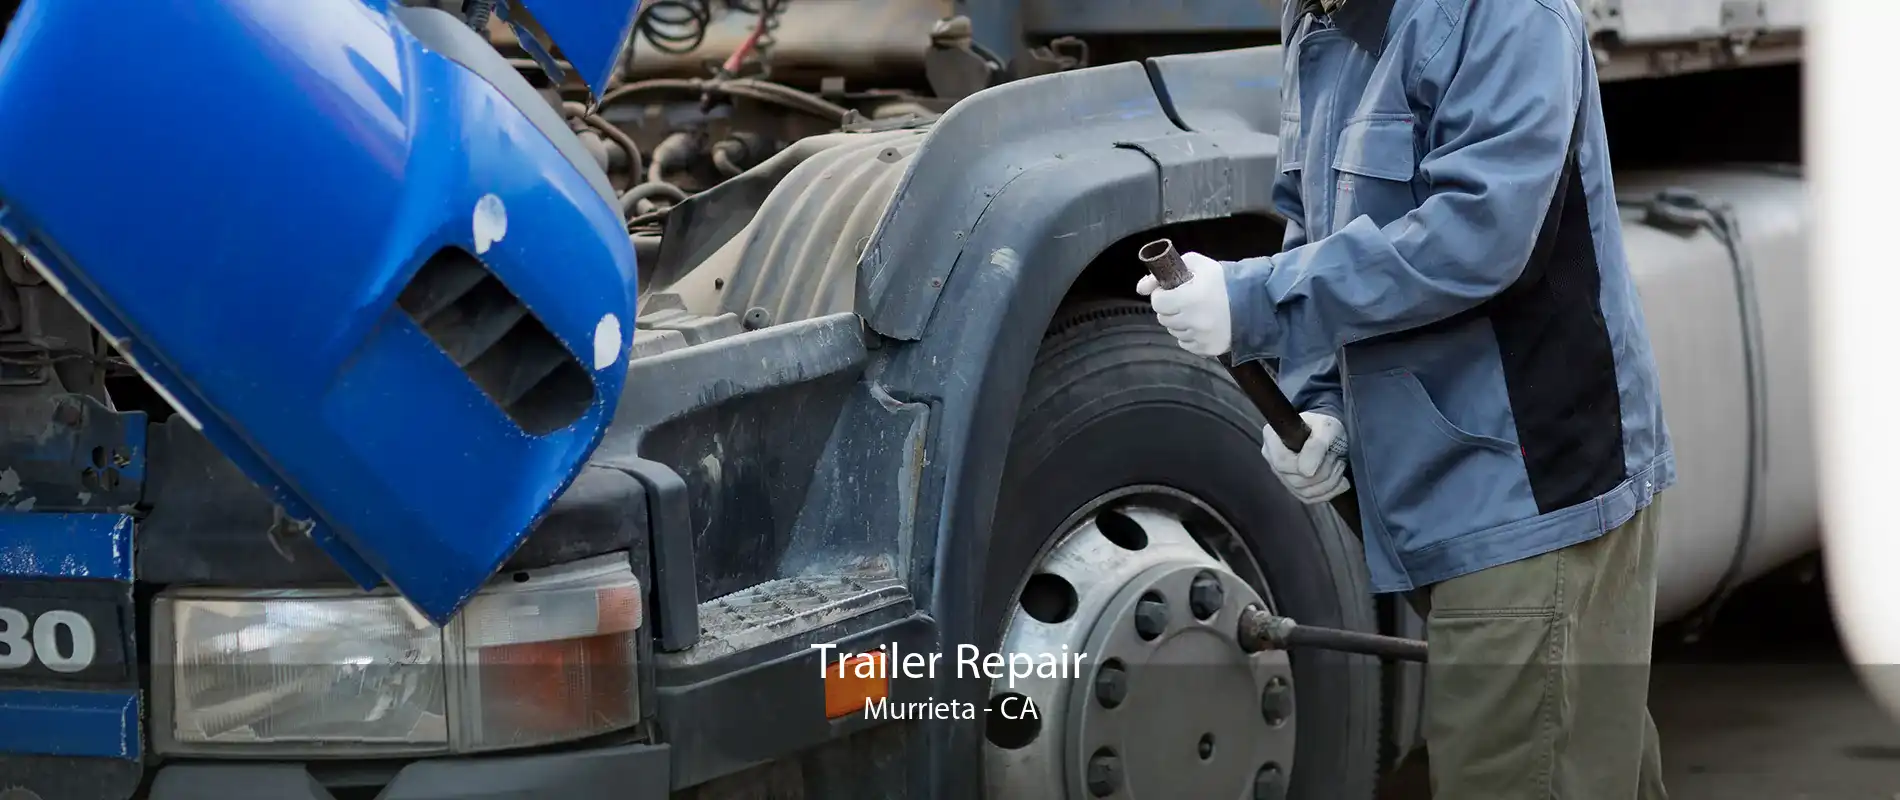 Trailer Repair Murrieta - CA